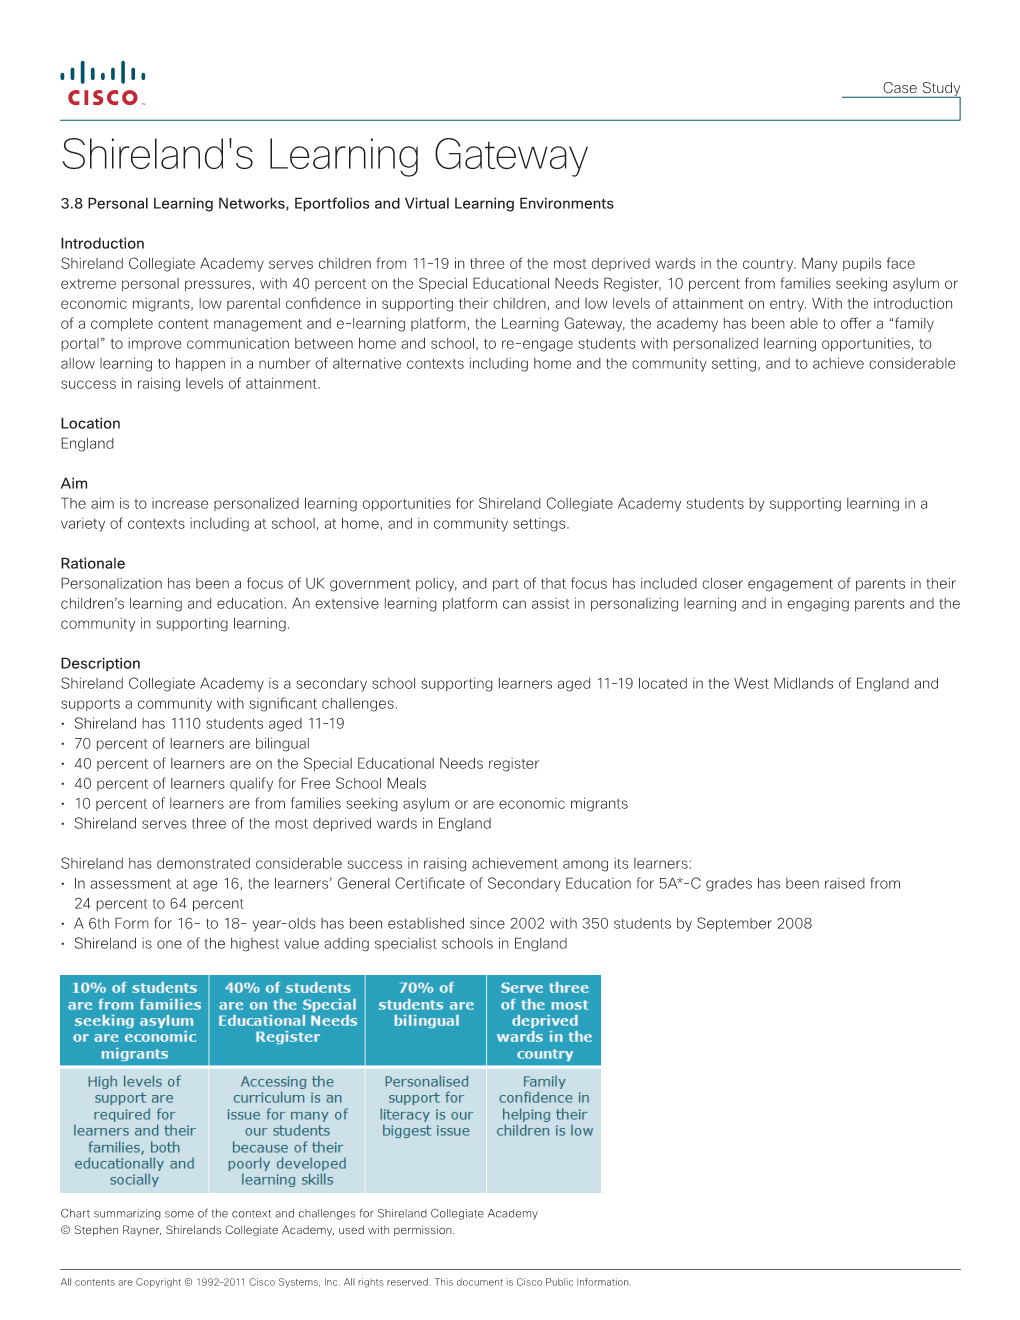 Shireland's Learning Gateway